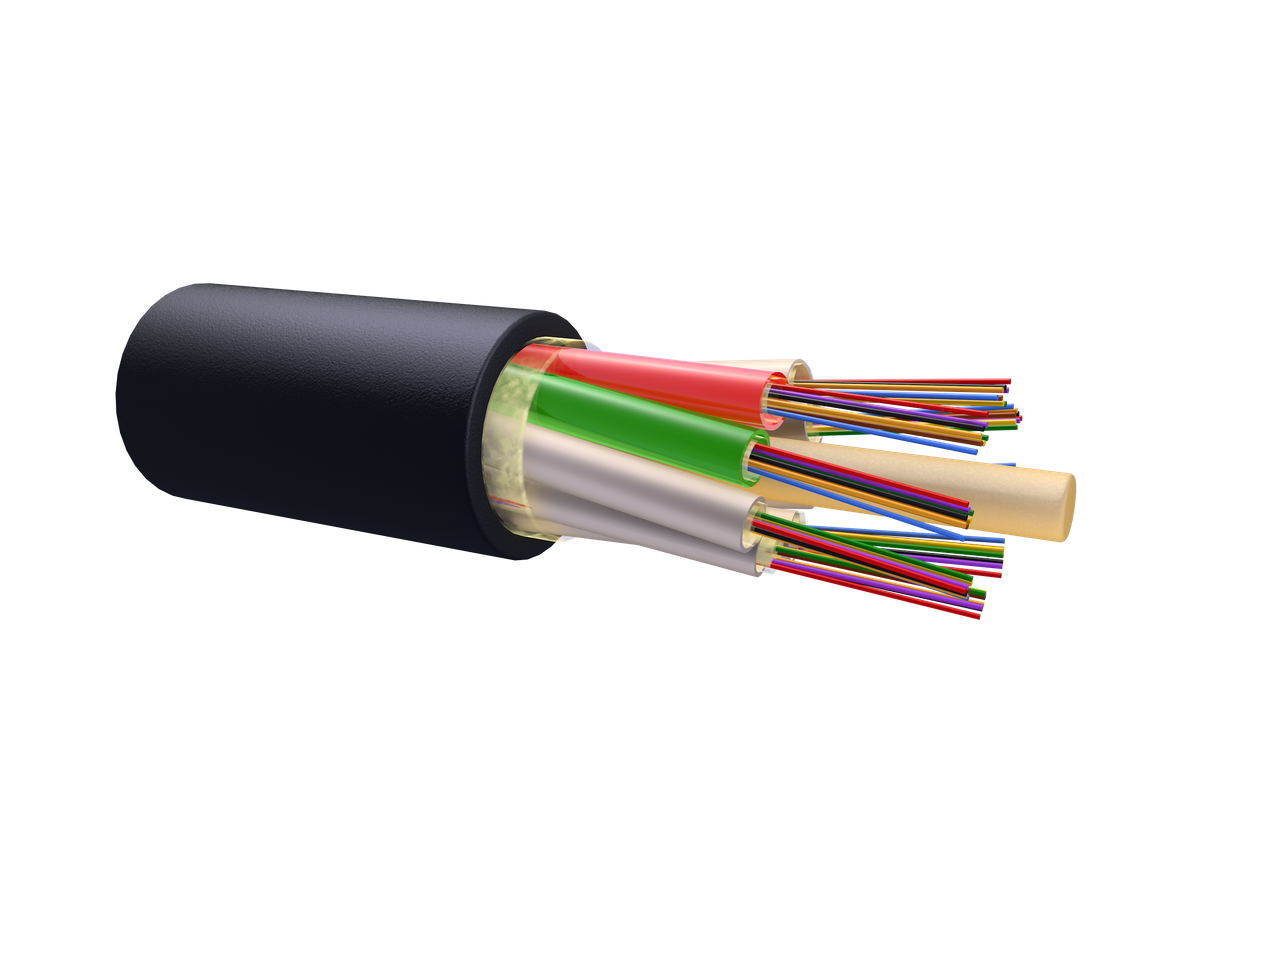 Оптический кабель для прокладки в пластмассовый трубопровод ОК-М6П-А4-2.7 (волокно Corning США)